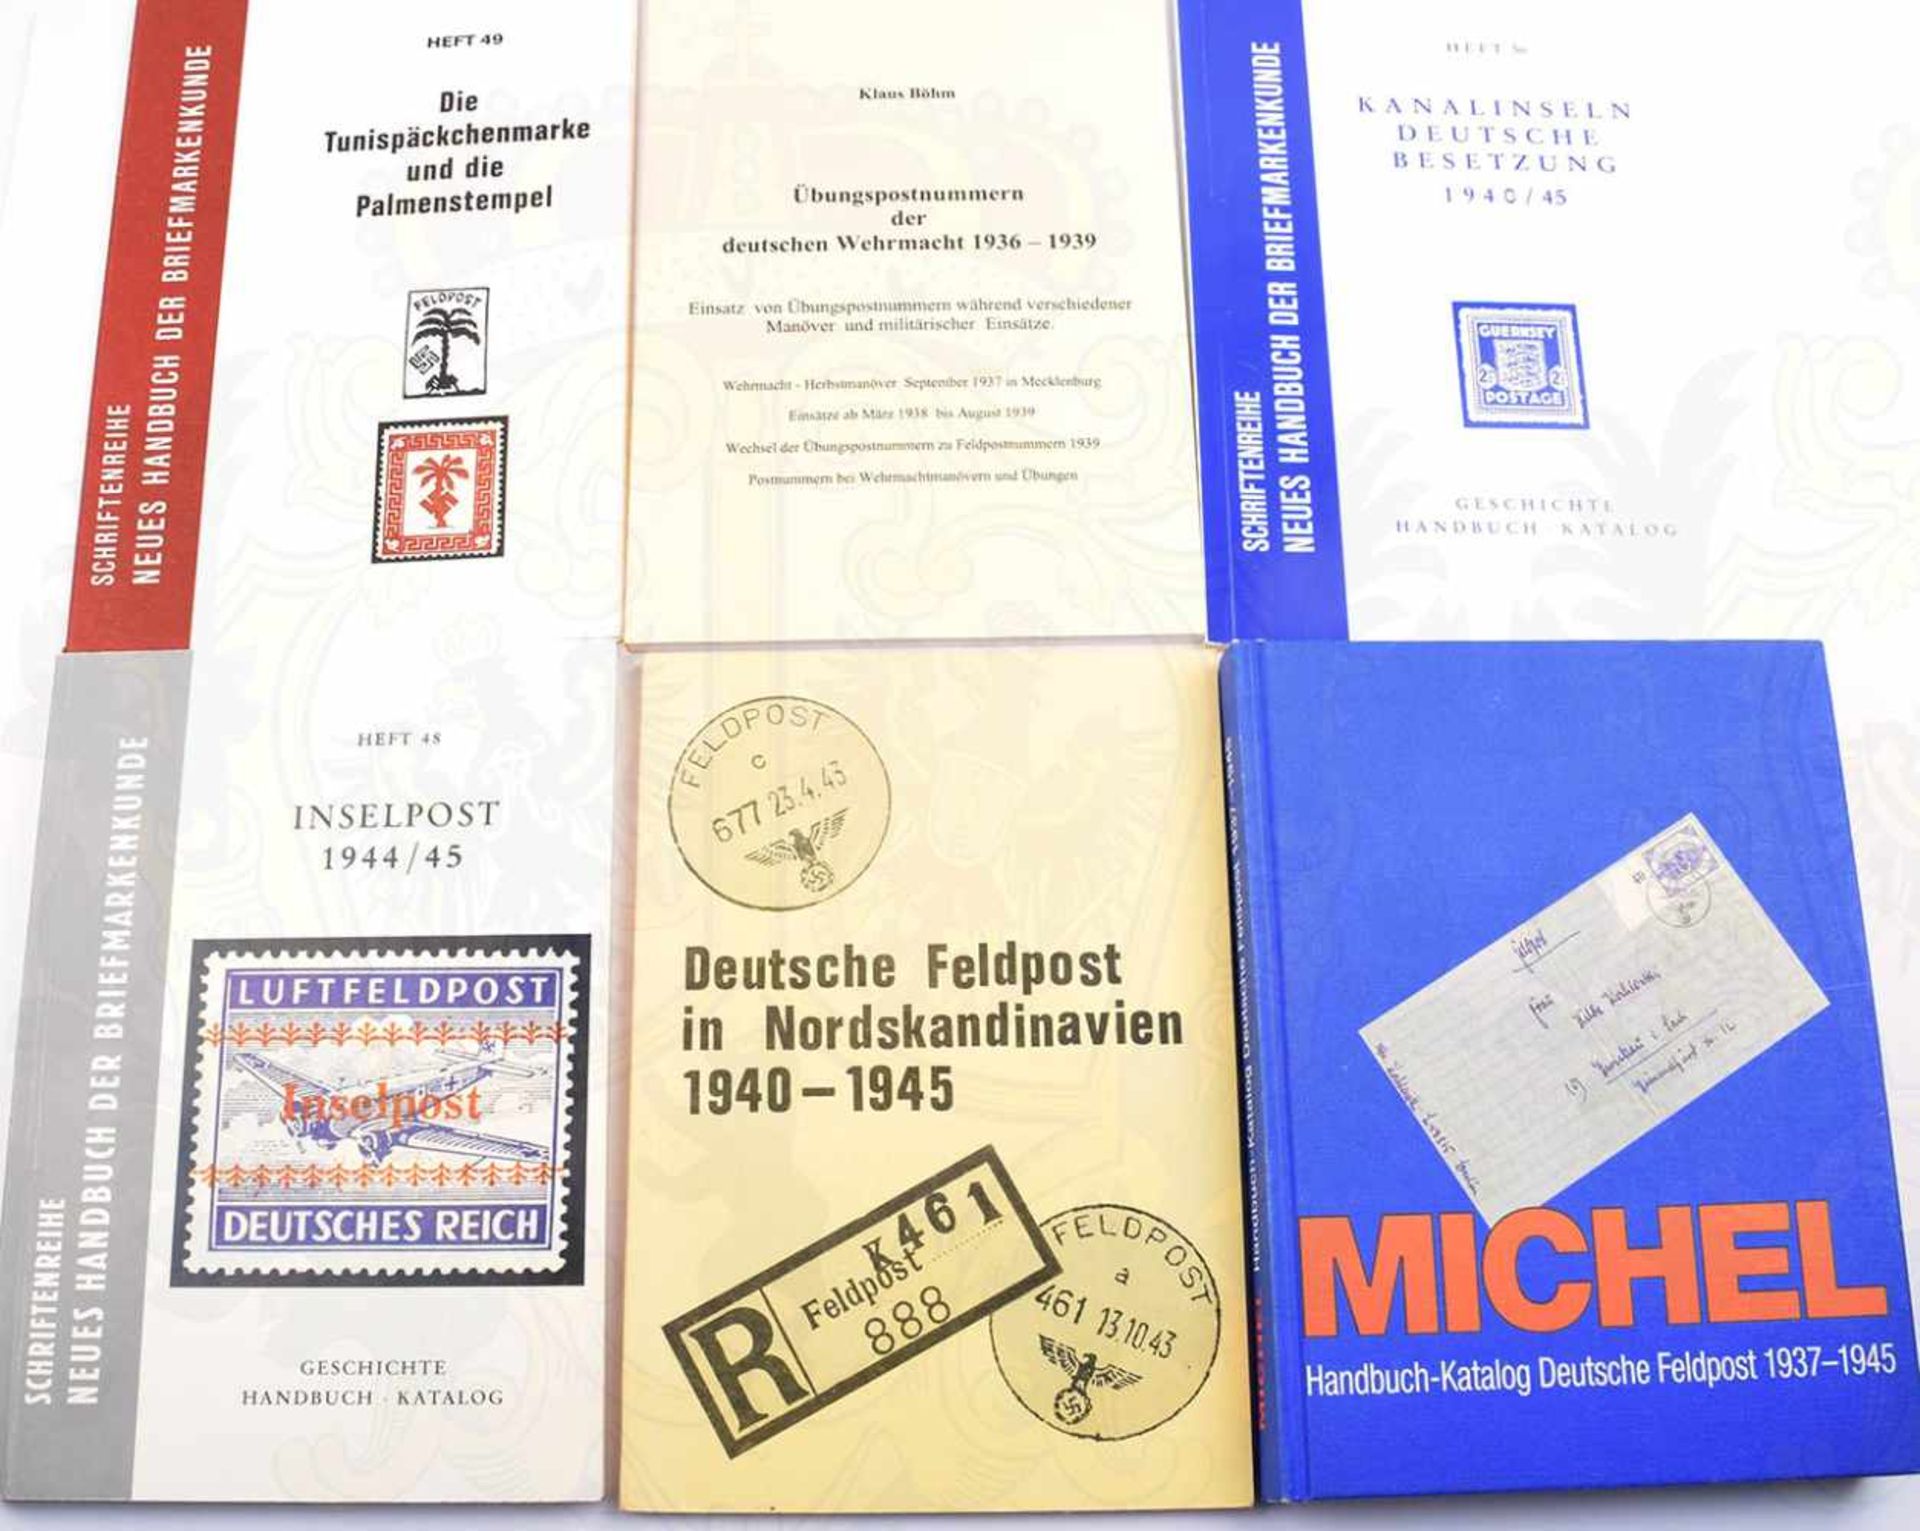 6 TITEL DEUTSCHE FELDPOST 2. WELTKRIEG: Michel-Katalog Deutsche Feldpost 1937-1945; Deutsche FP in